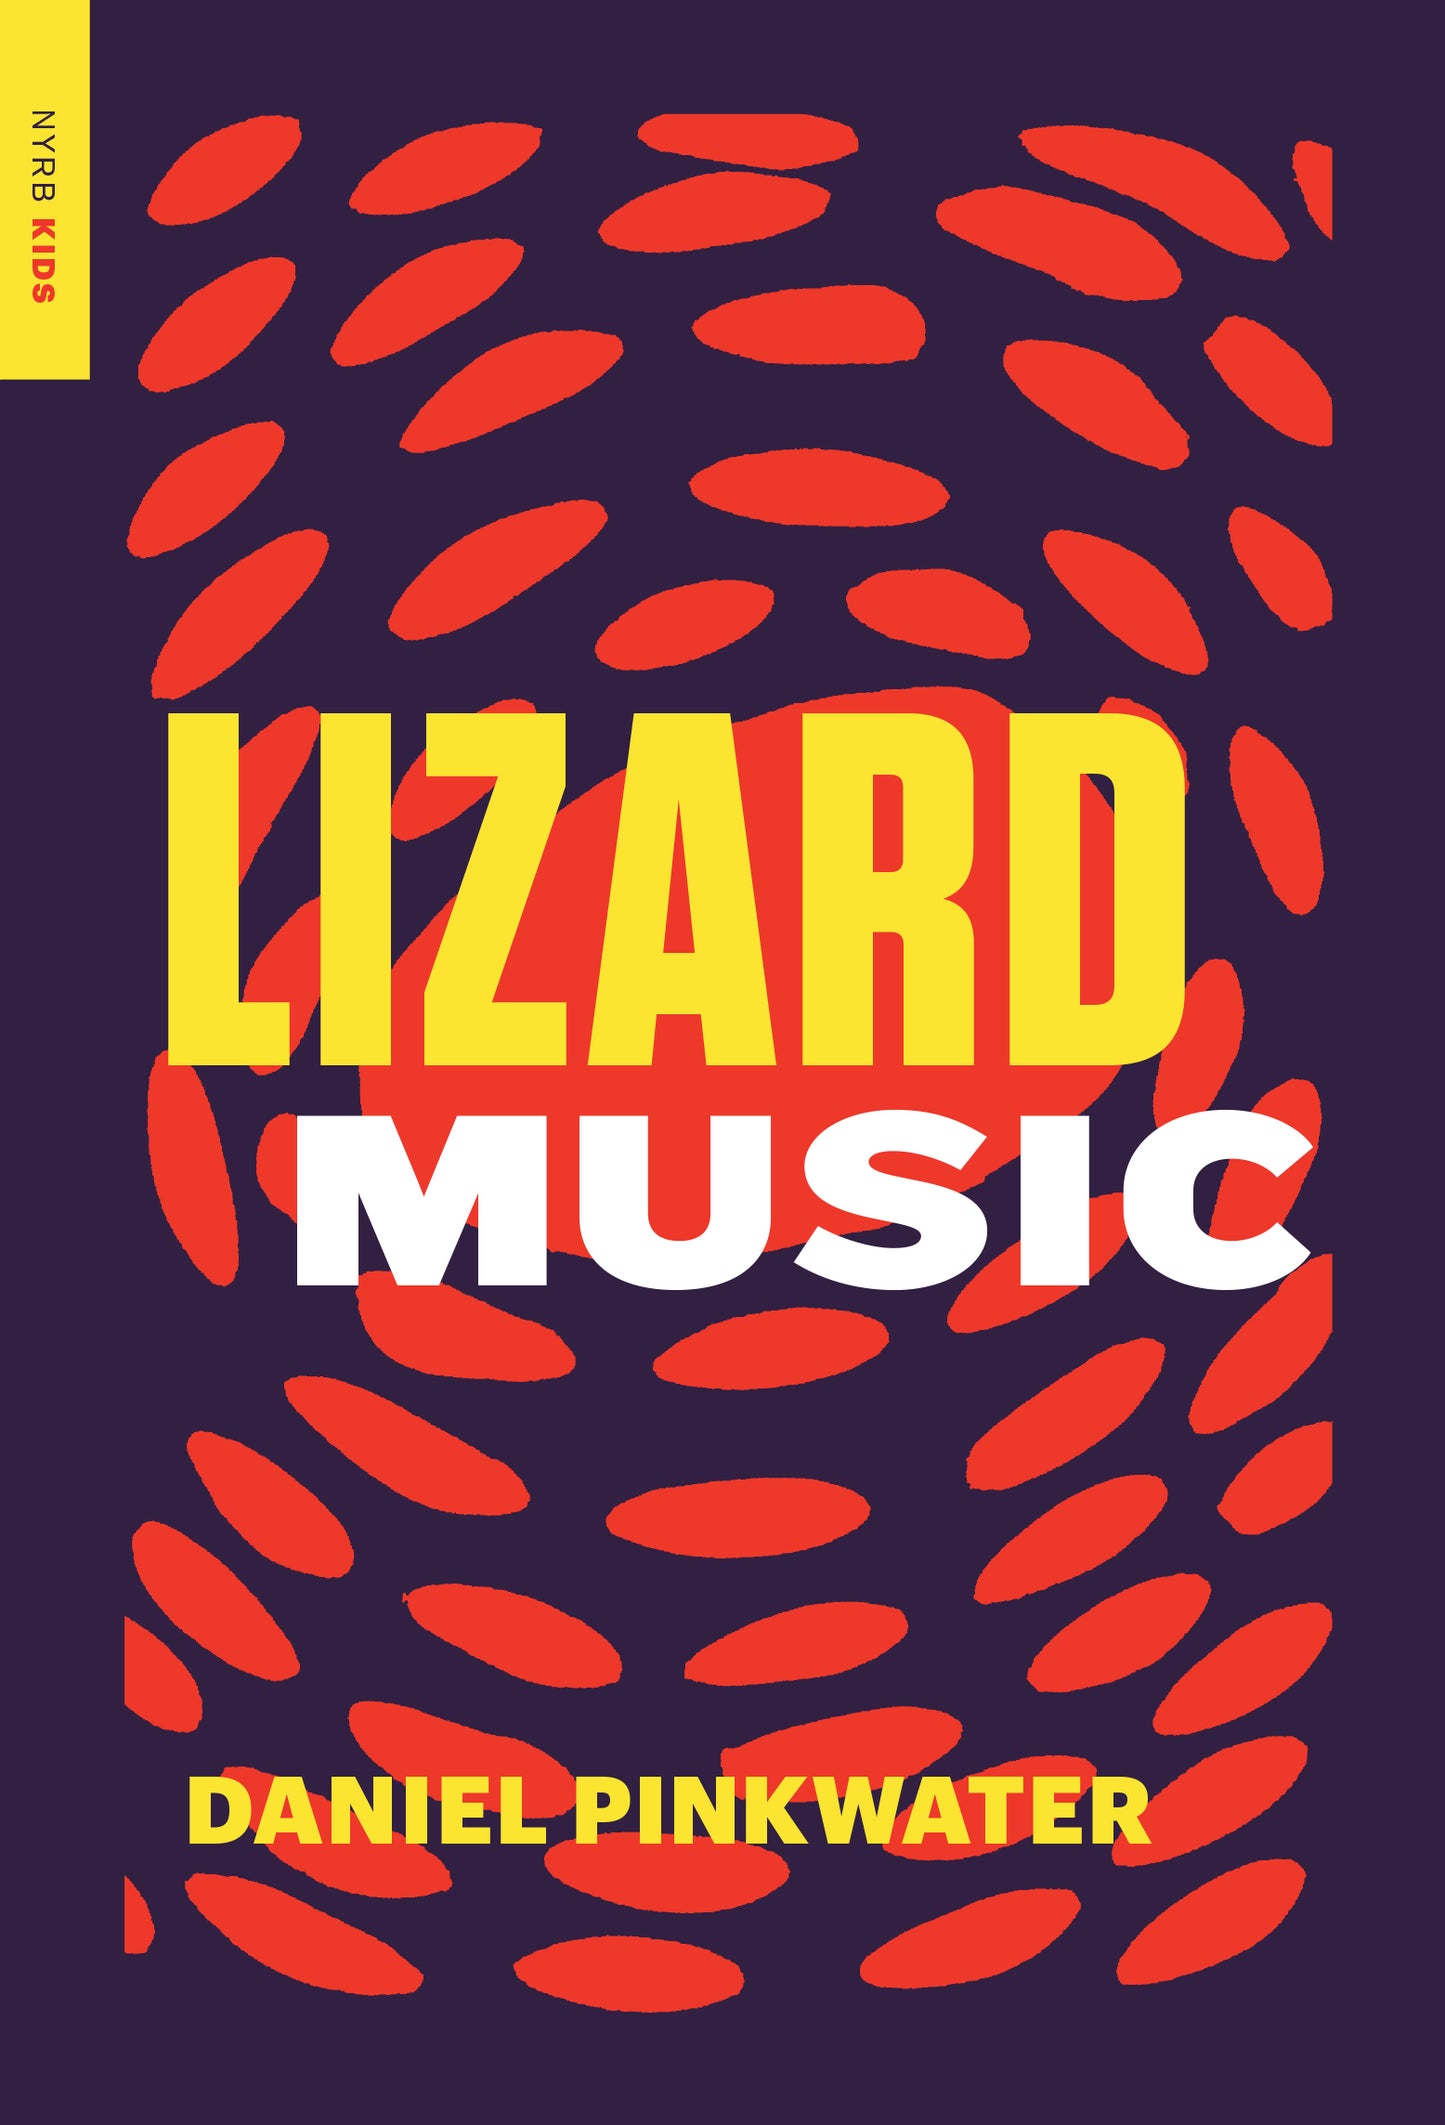 Lizard Music